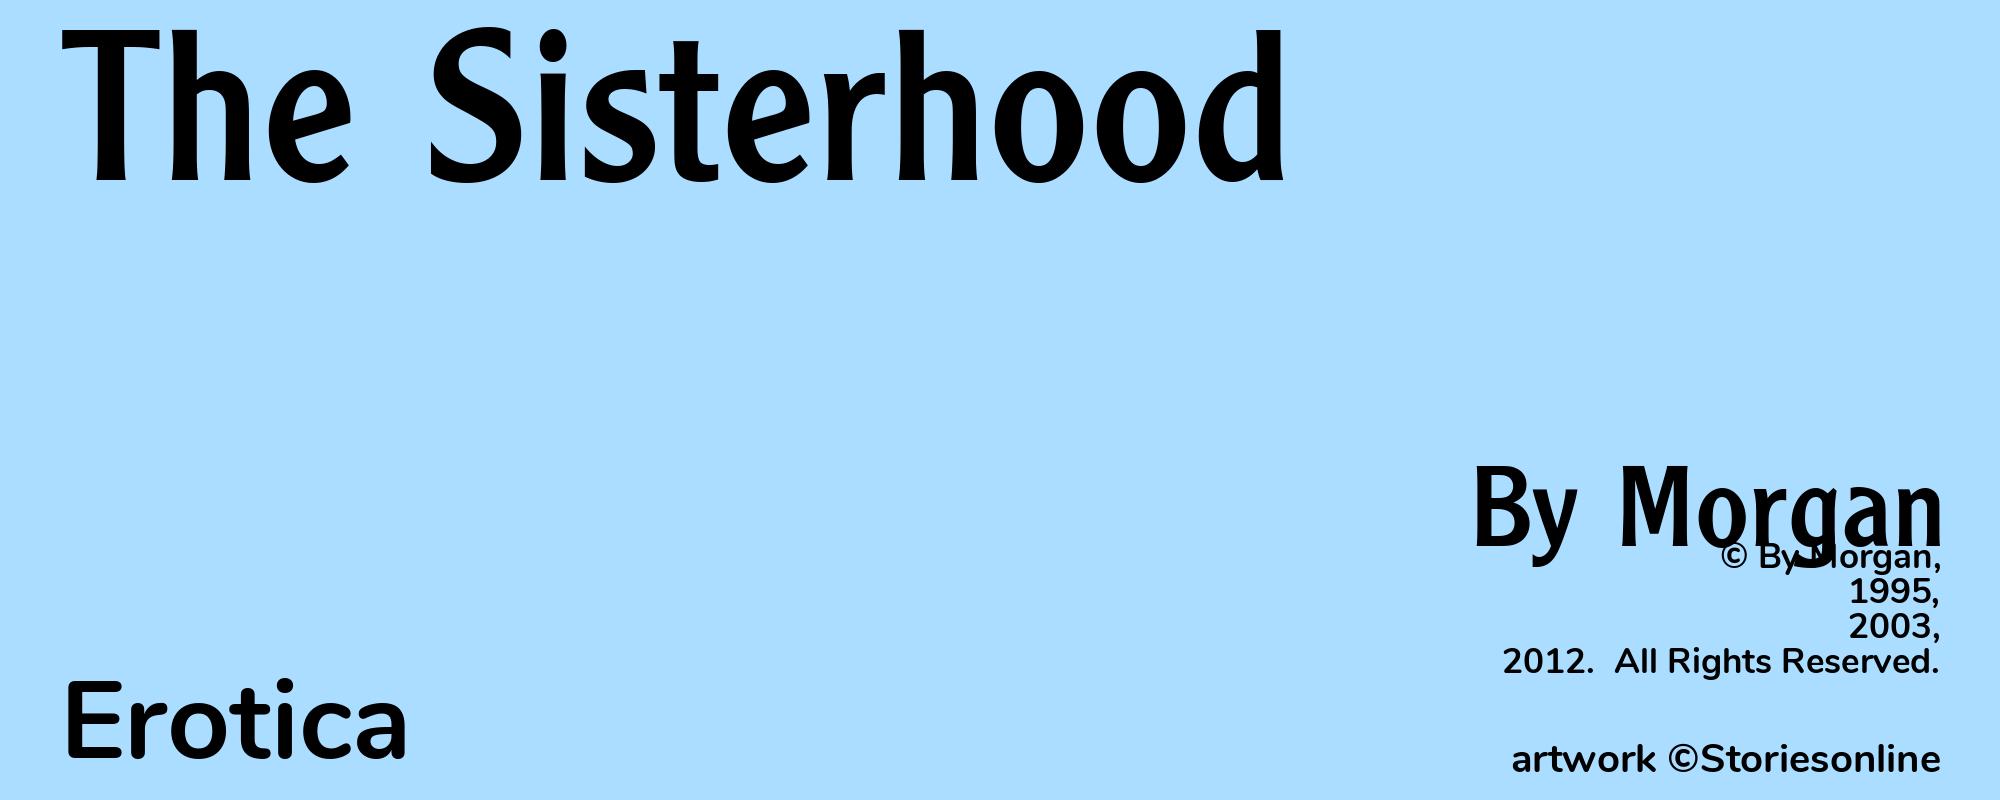 The Sisterhood - Cover